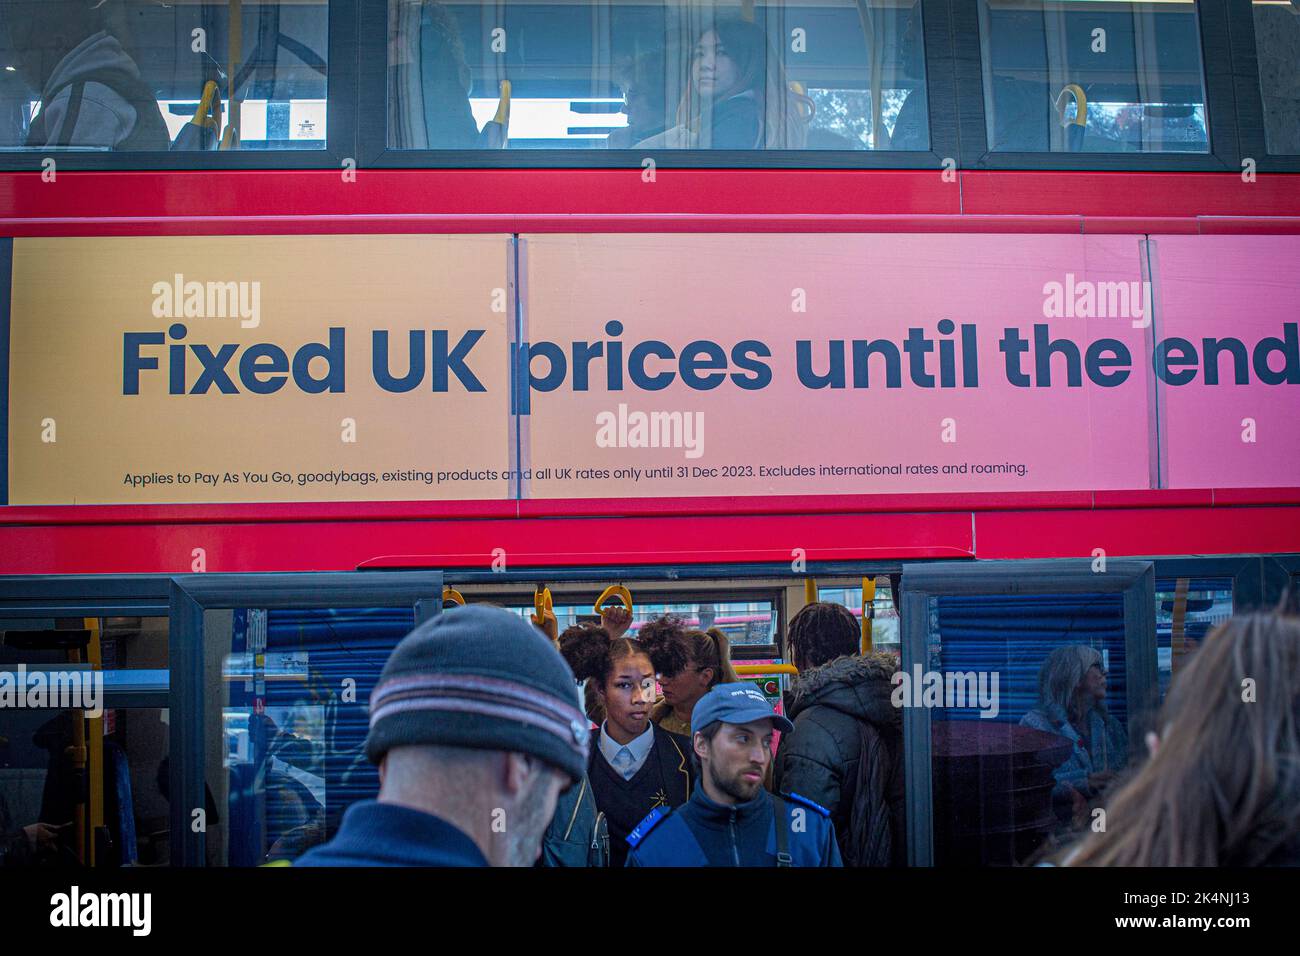 Londres, Royaume-Uni. Sept 29 2022 .Un bus rouge à impériale avec une publicité pour les prix fixes au Royaume-Uni jusqu'à la fin à l'arrêt de bus à Lewisham. Banque D'Images